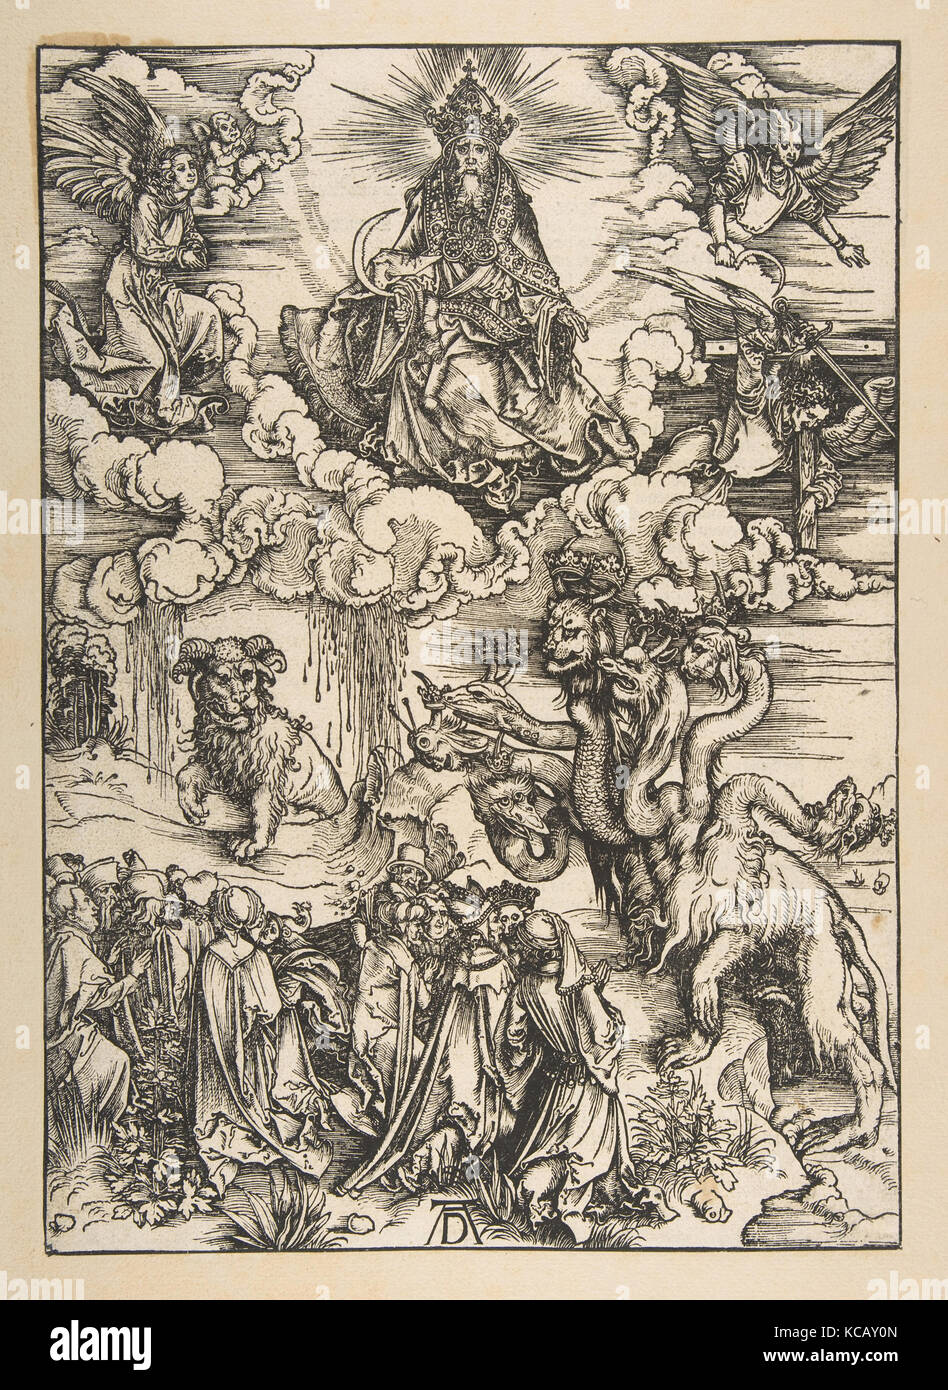 La bestia con due corna simili a quelle di un agnello, dall'Apocalisse, edizione latina 1511, Albrecht Dürer, ca. 1496 Foto Stock